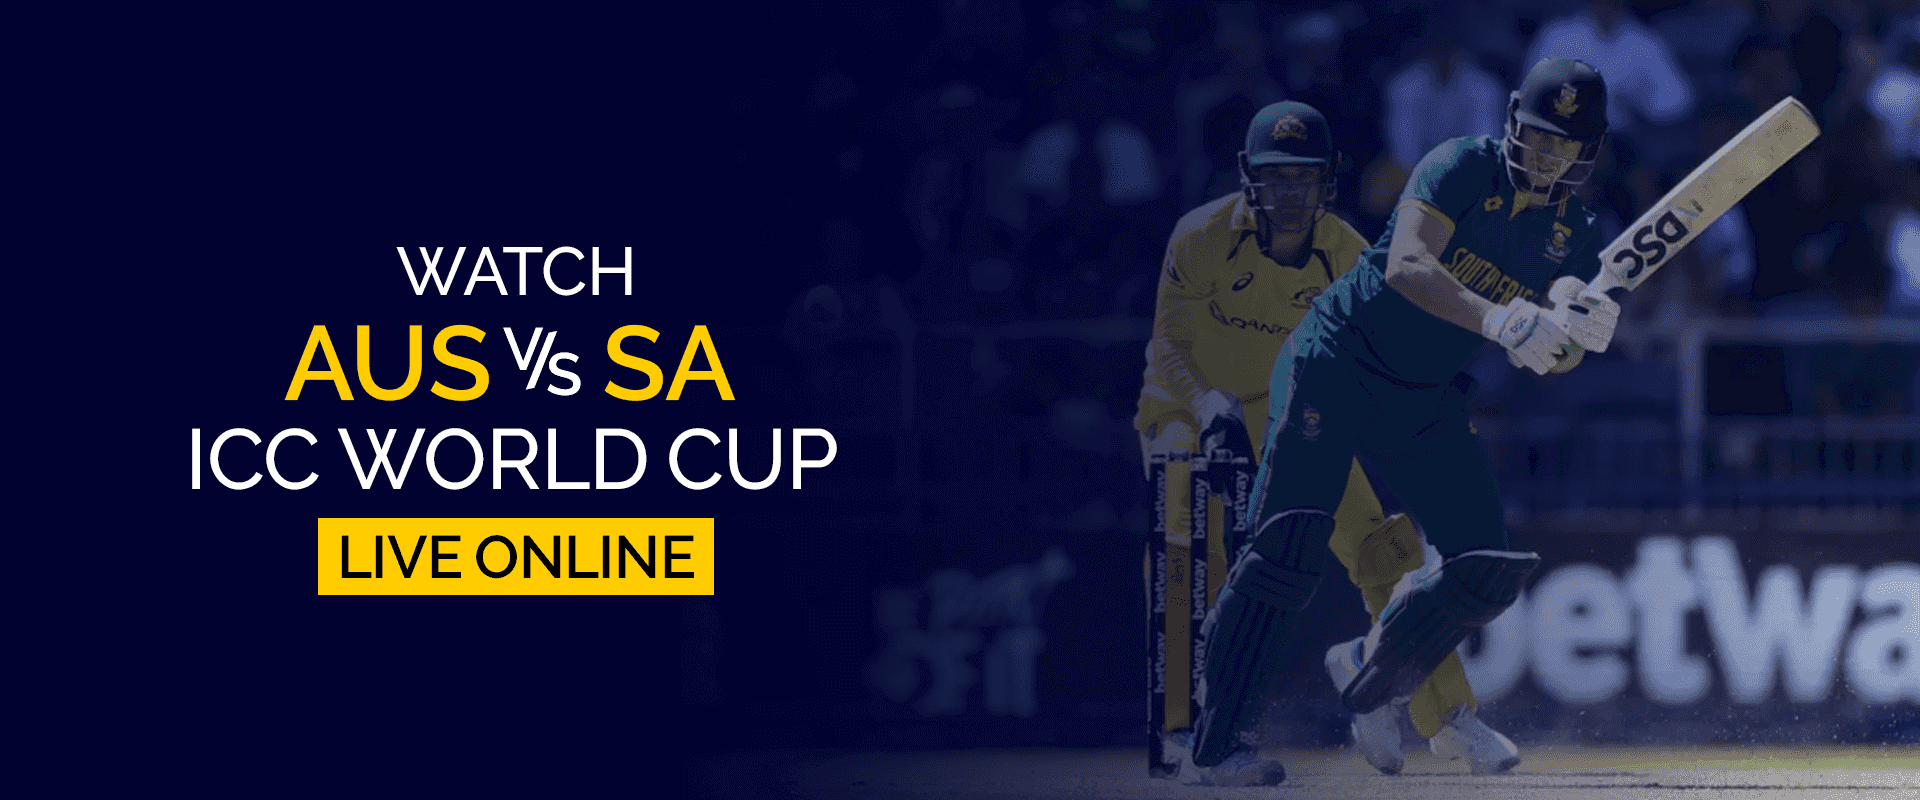 شاهد كأس العالم AUS vs SA ICC مباشرة عبر الإنترنت